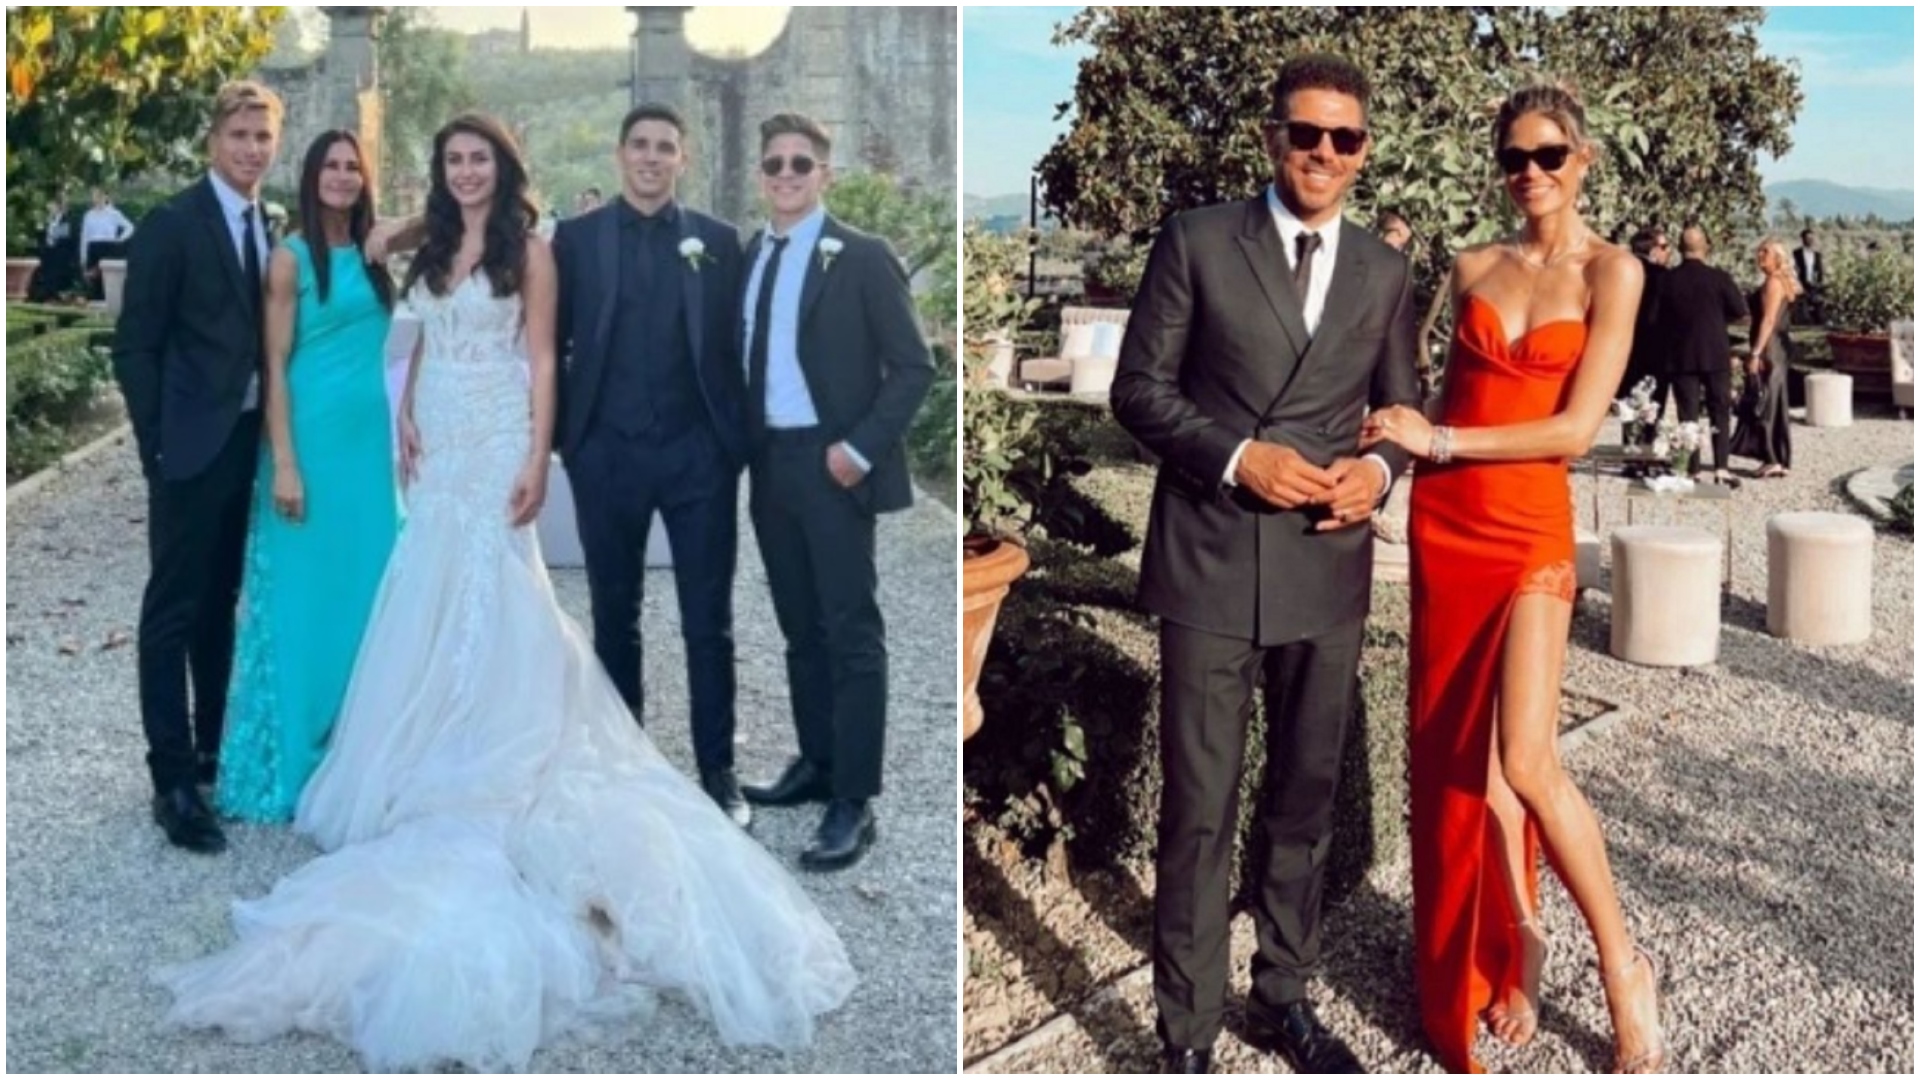 Carolina Baldini y el Cholo Simeone, distanciados en la boda de su hijo: las imágenes de la gran fiesta en Italia